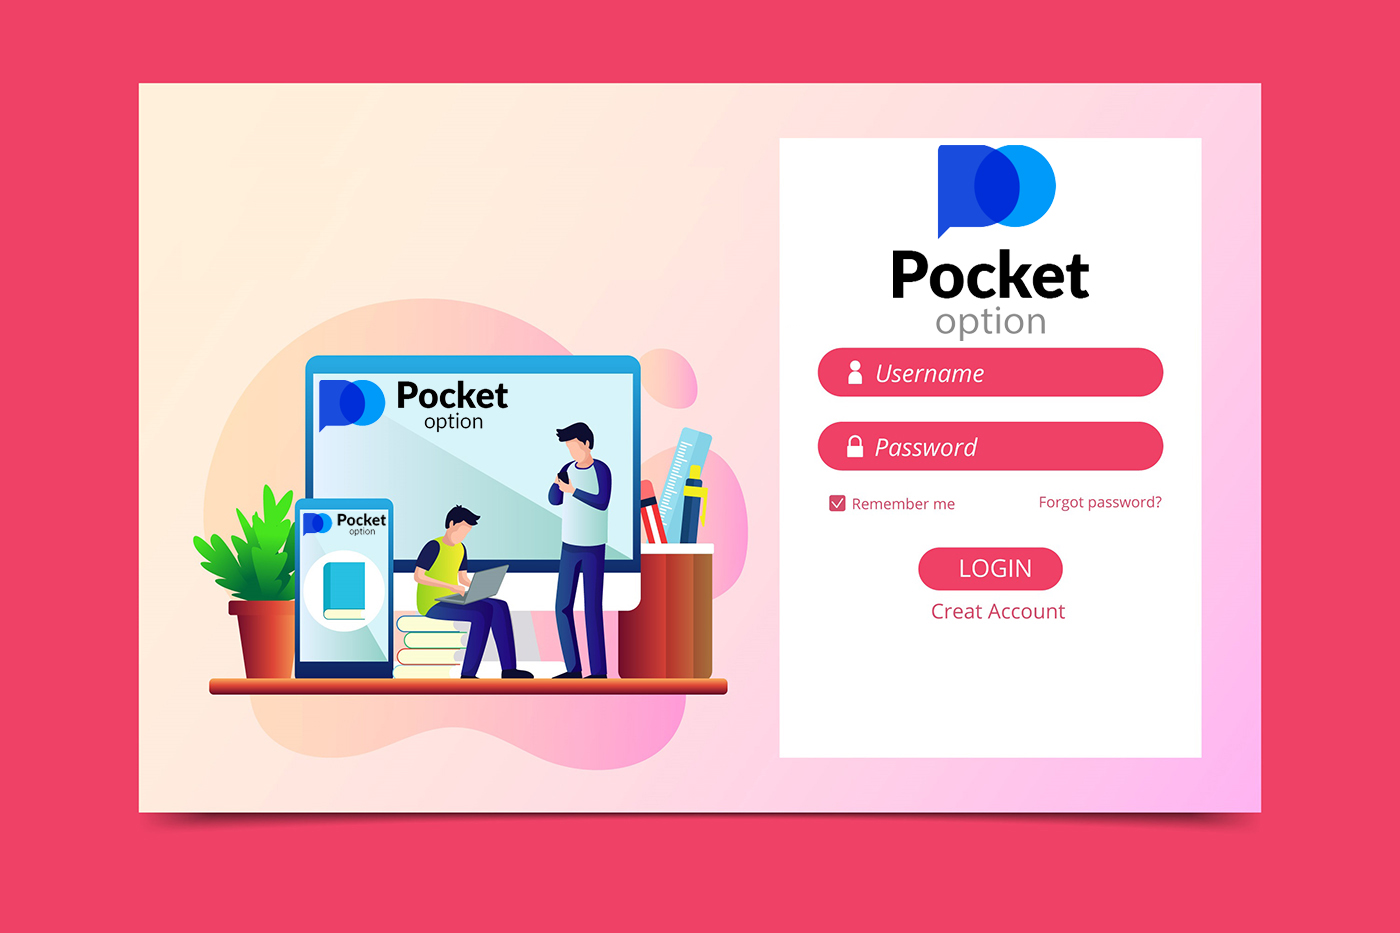 របៀបបើកគណនី និងចូលទៅ Pocket Option